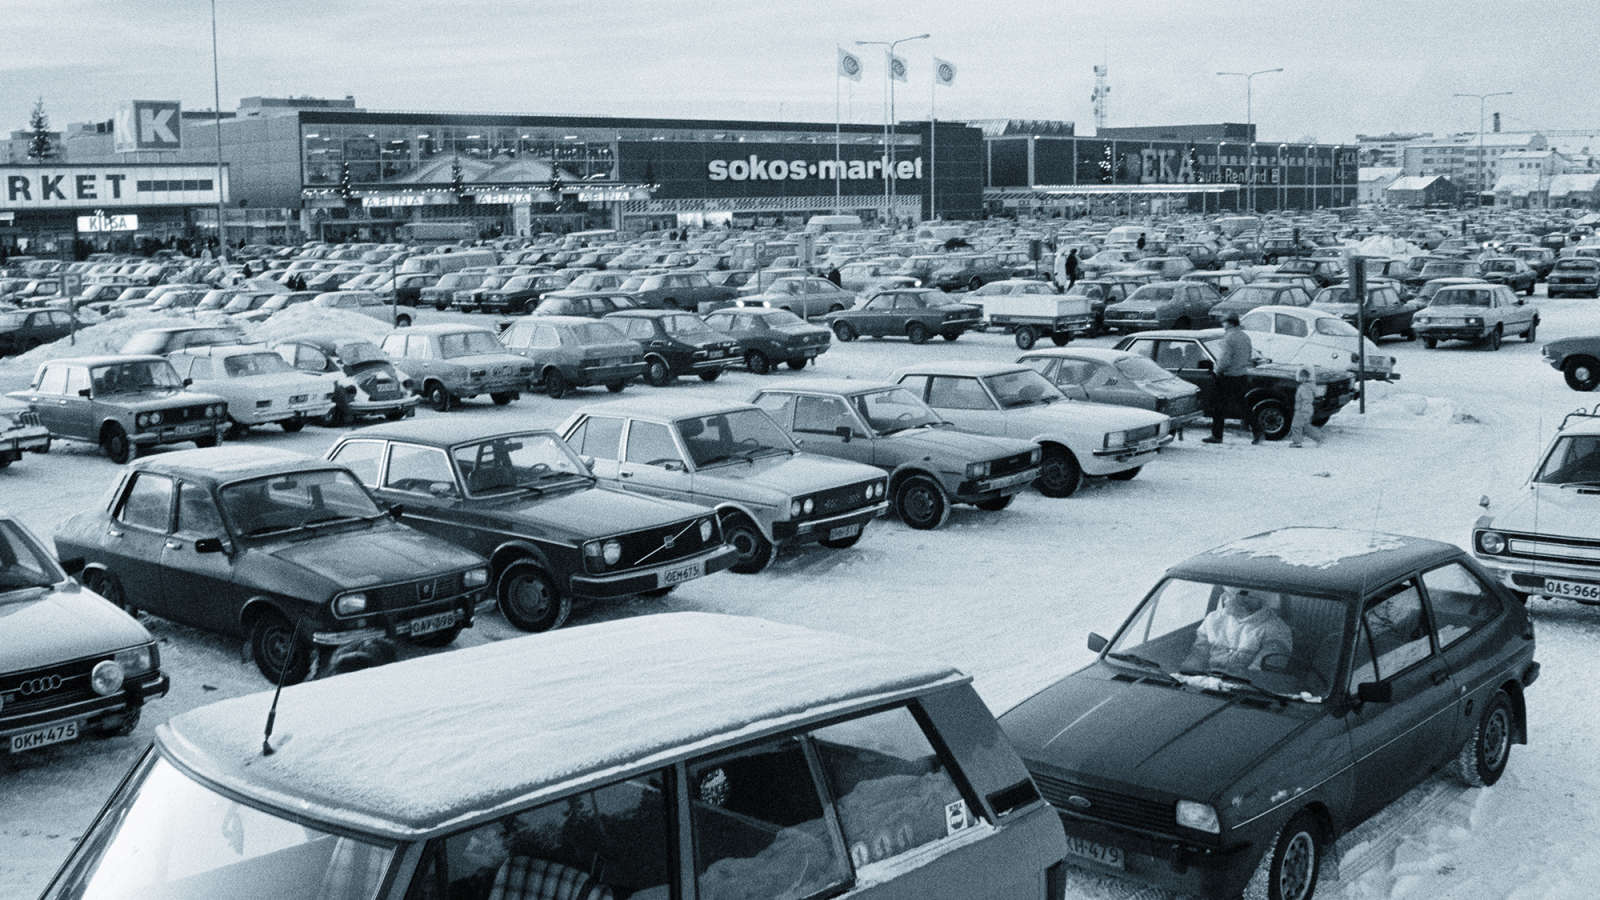 Oulun Raksilassa sijainnut Sokos-market oli suosittu ostospaikka.